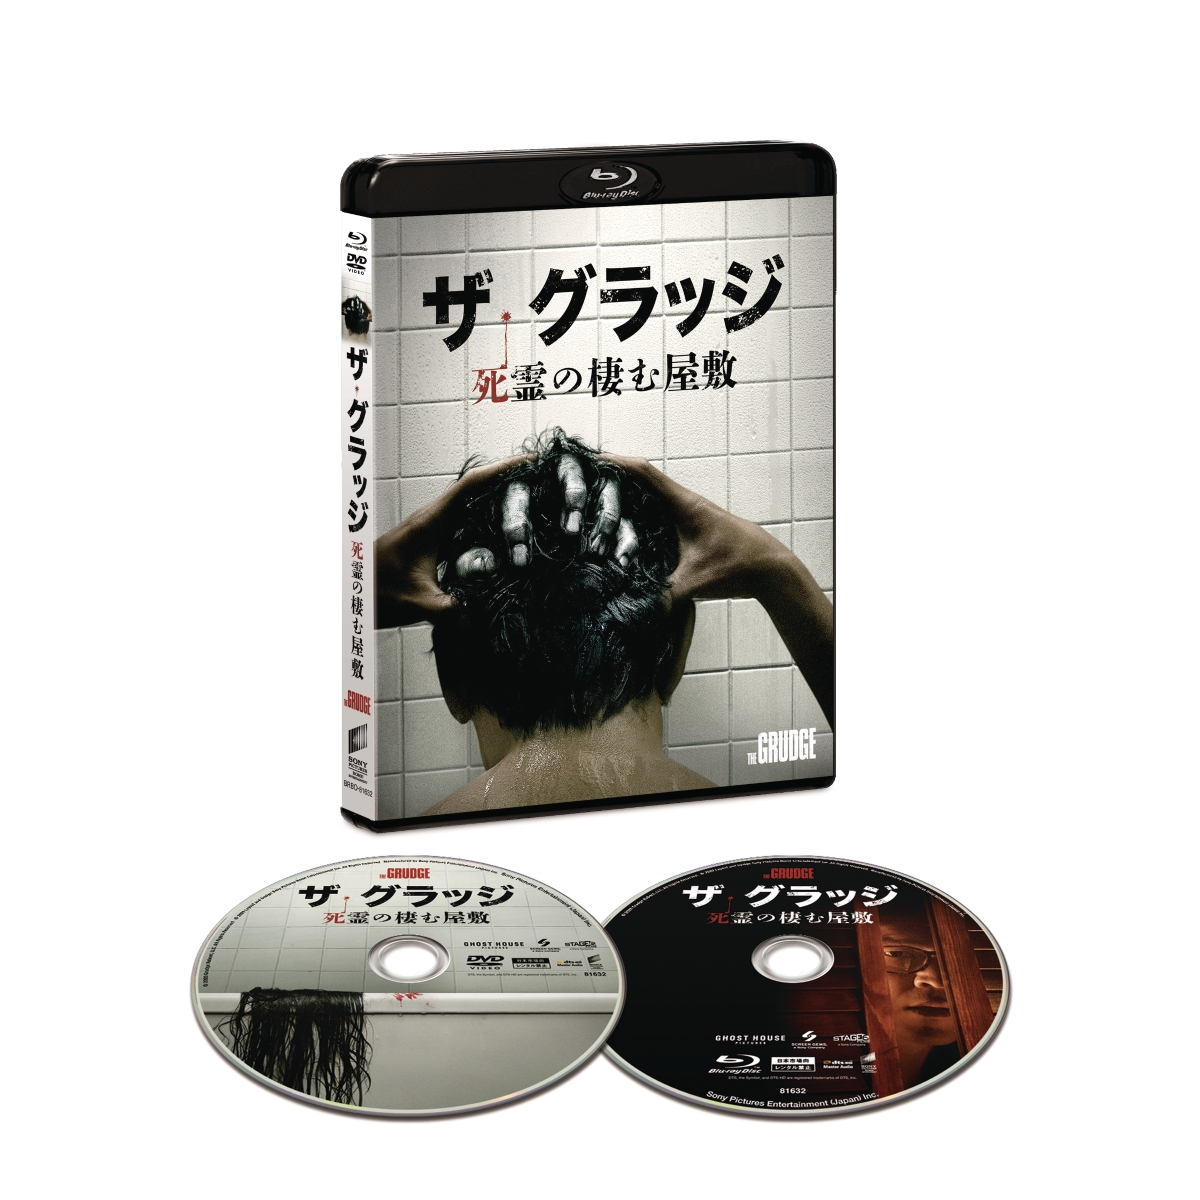 ザ・グラッジ死霊の棲む屋敷ブルーレイ&DVDセット【Blu-ray】[アンドレア・ライズボロー]